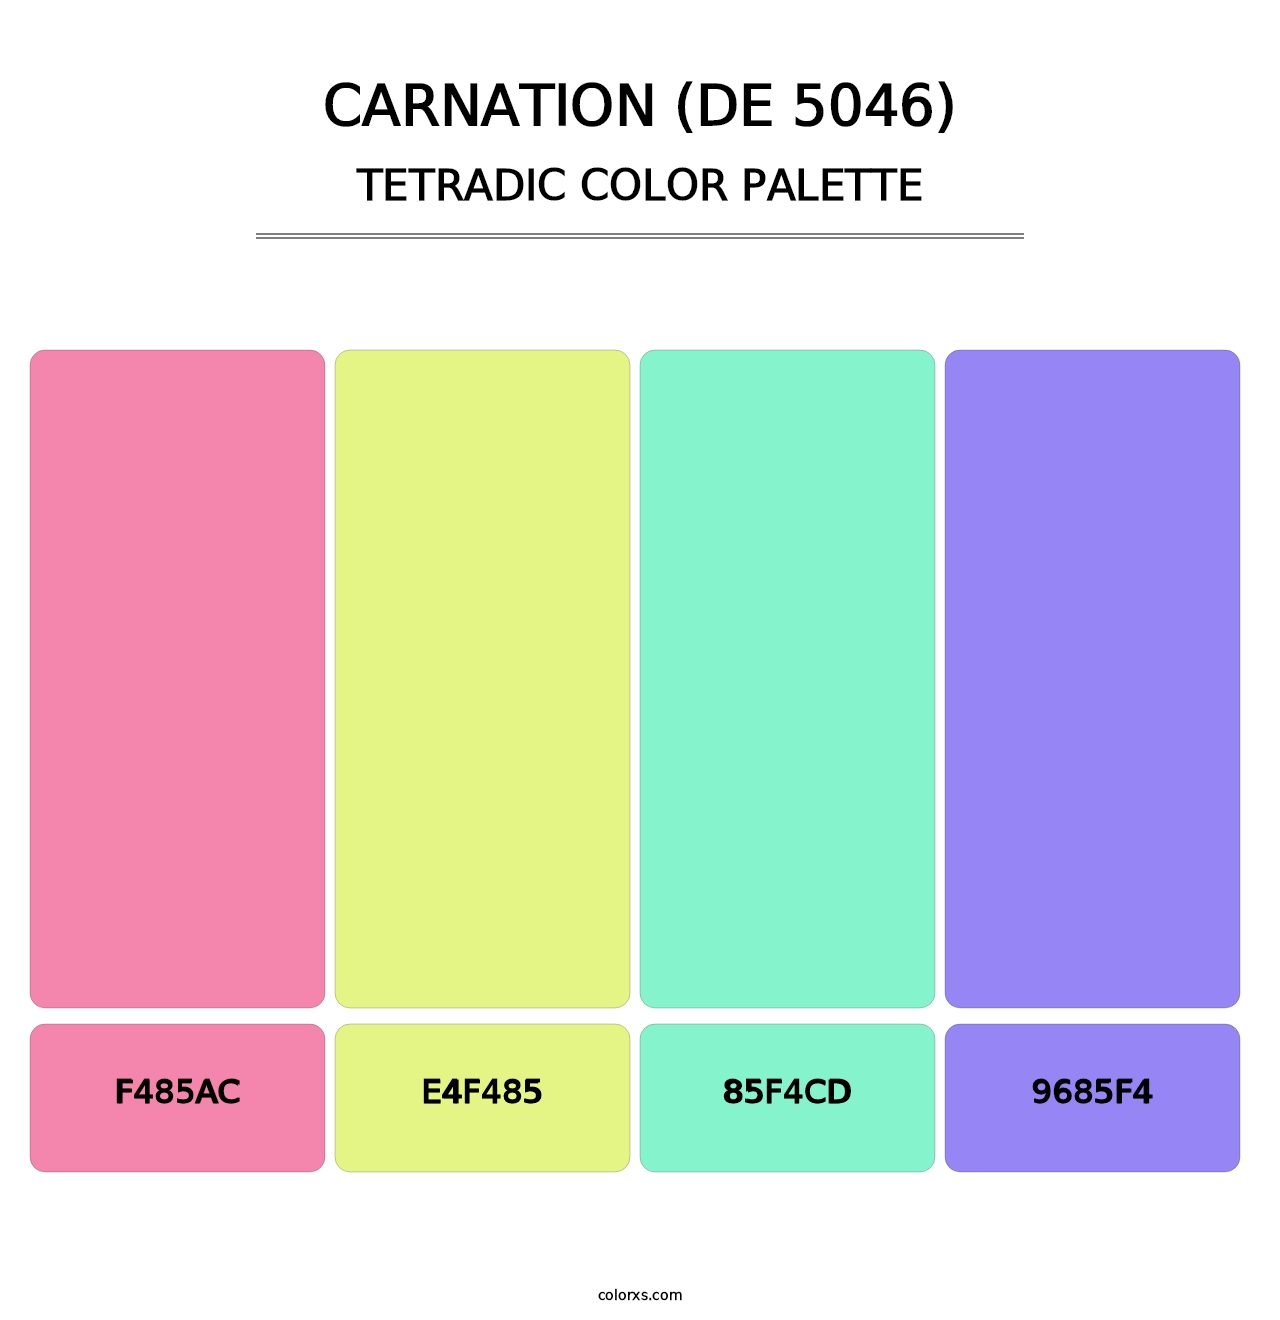 Carnation (DE 5046) - Tetradic Color Palette